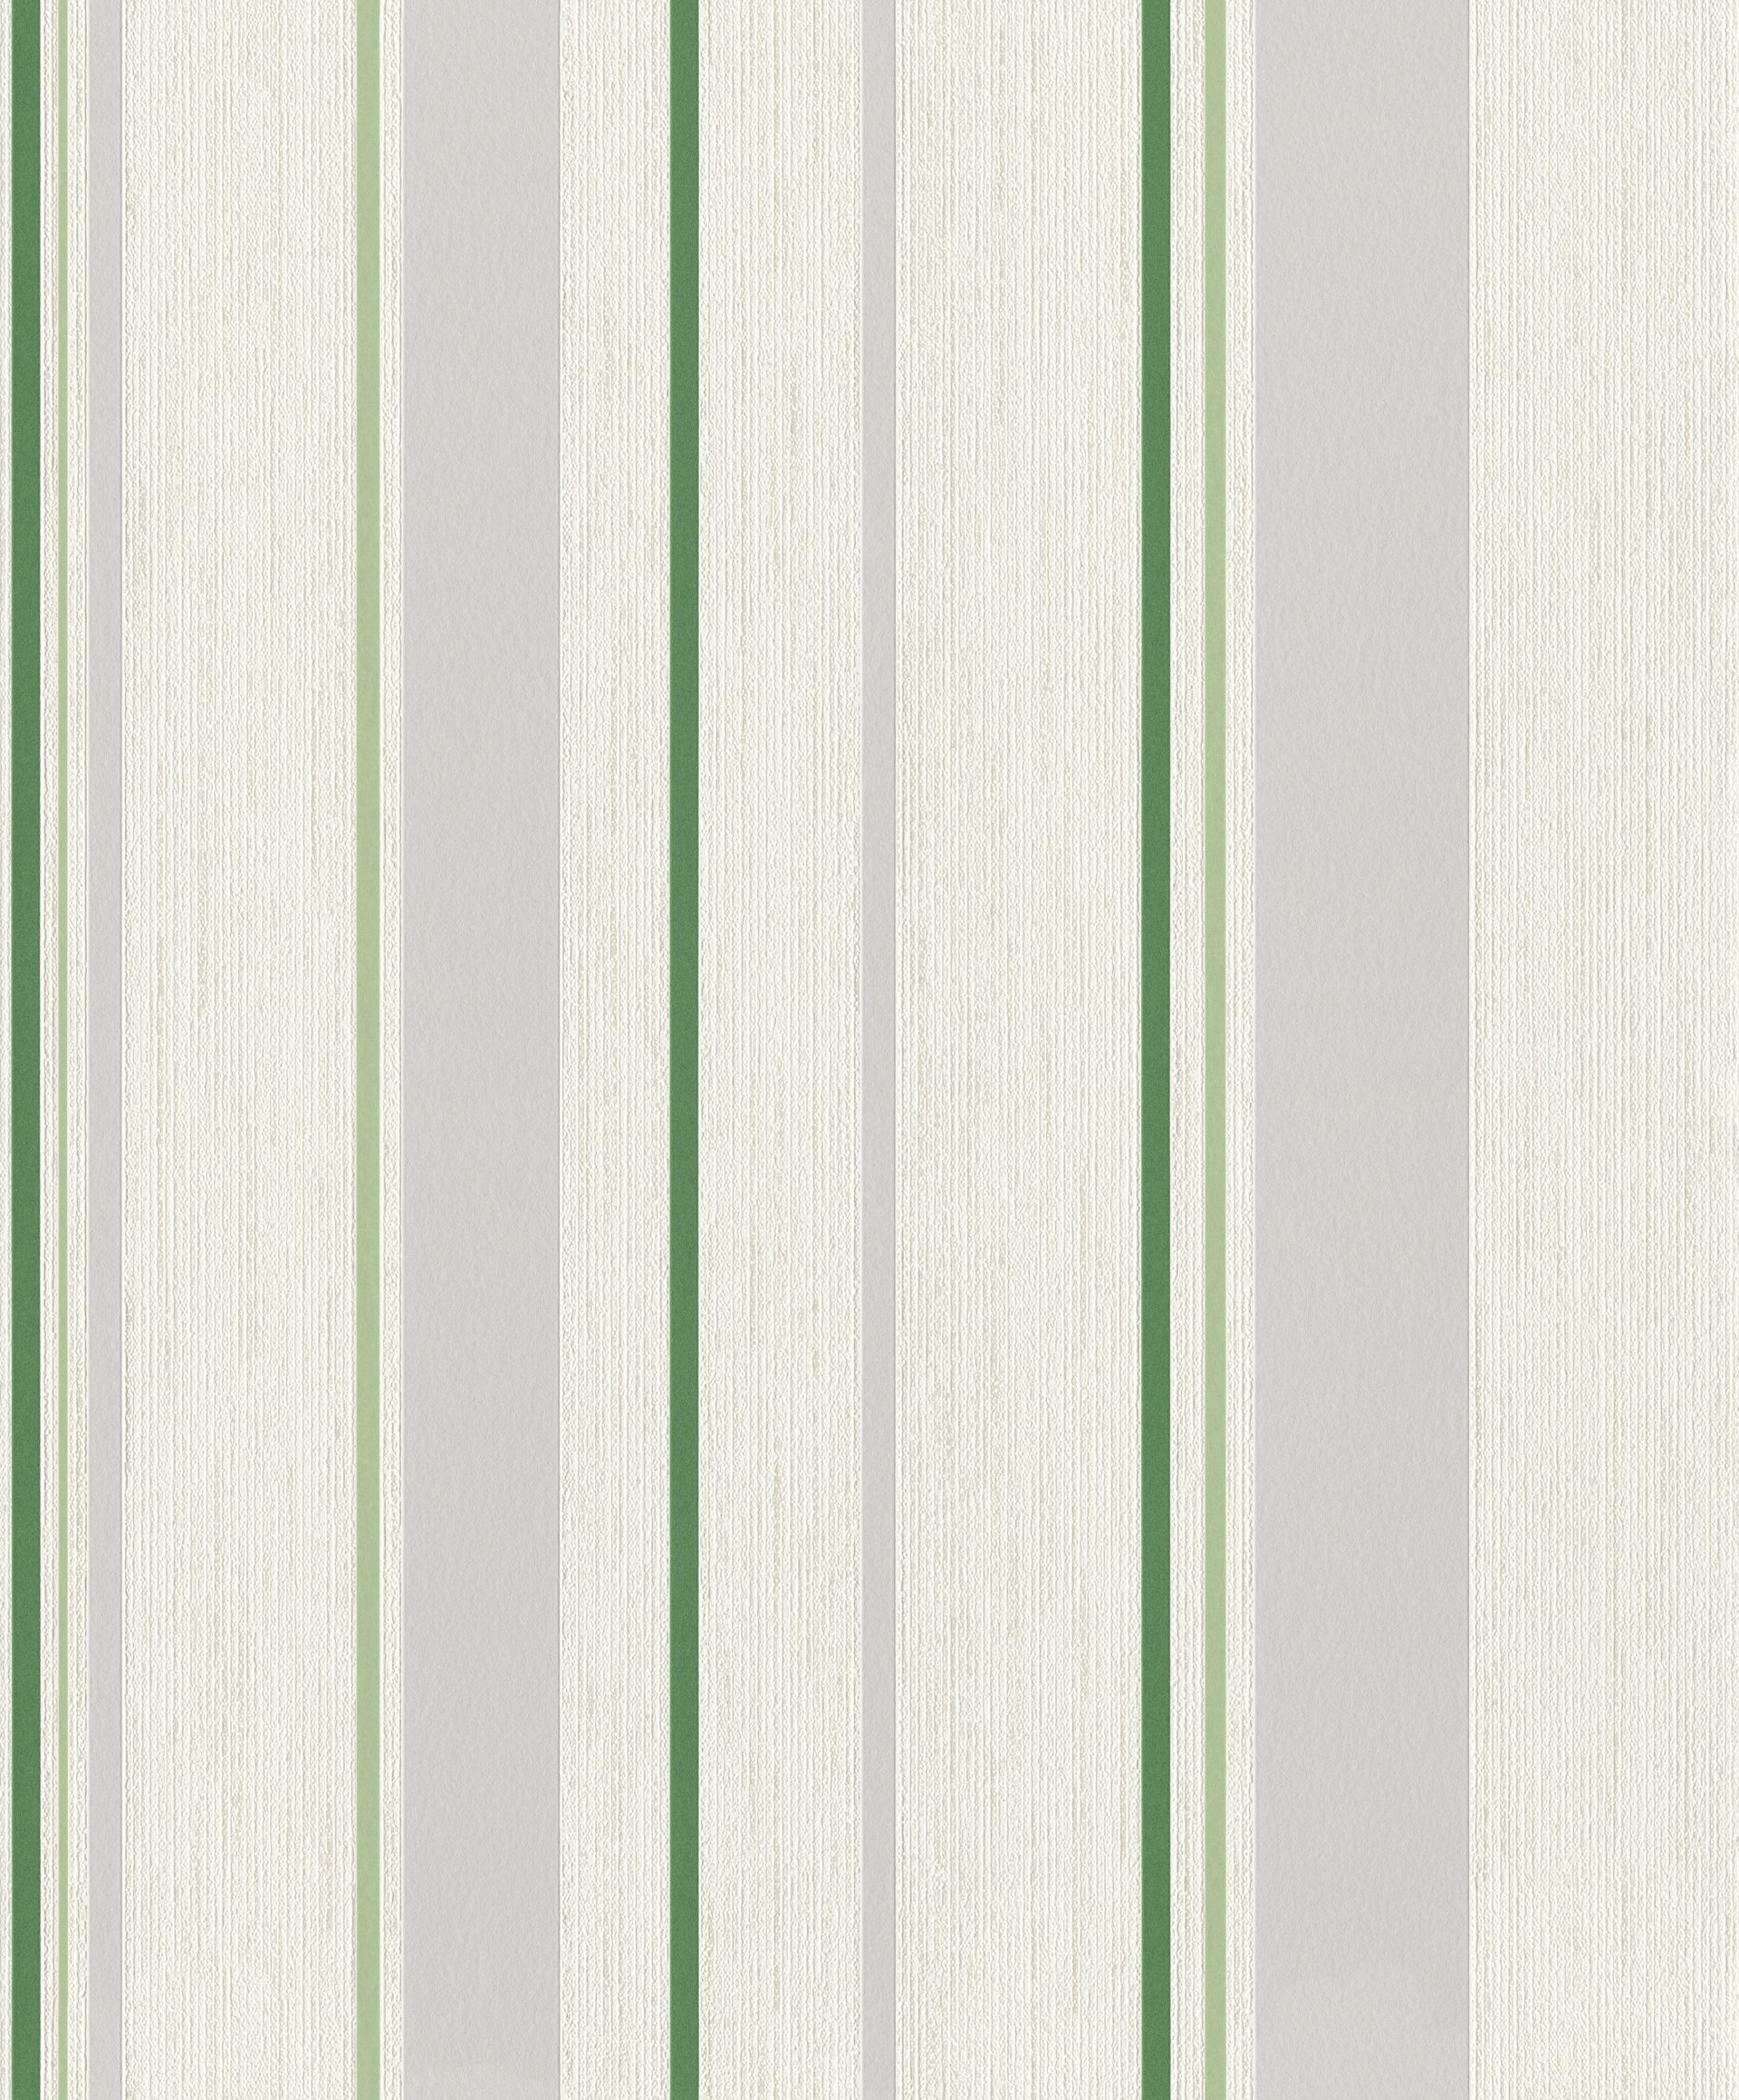 Rasch Selection, Grafisch, weiß grün 536232